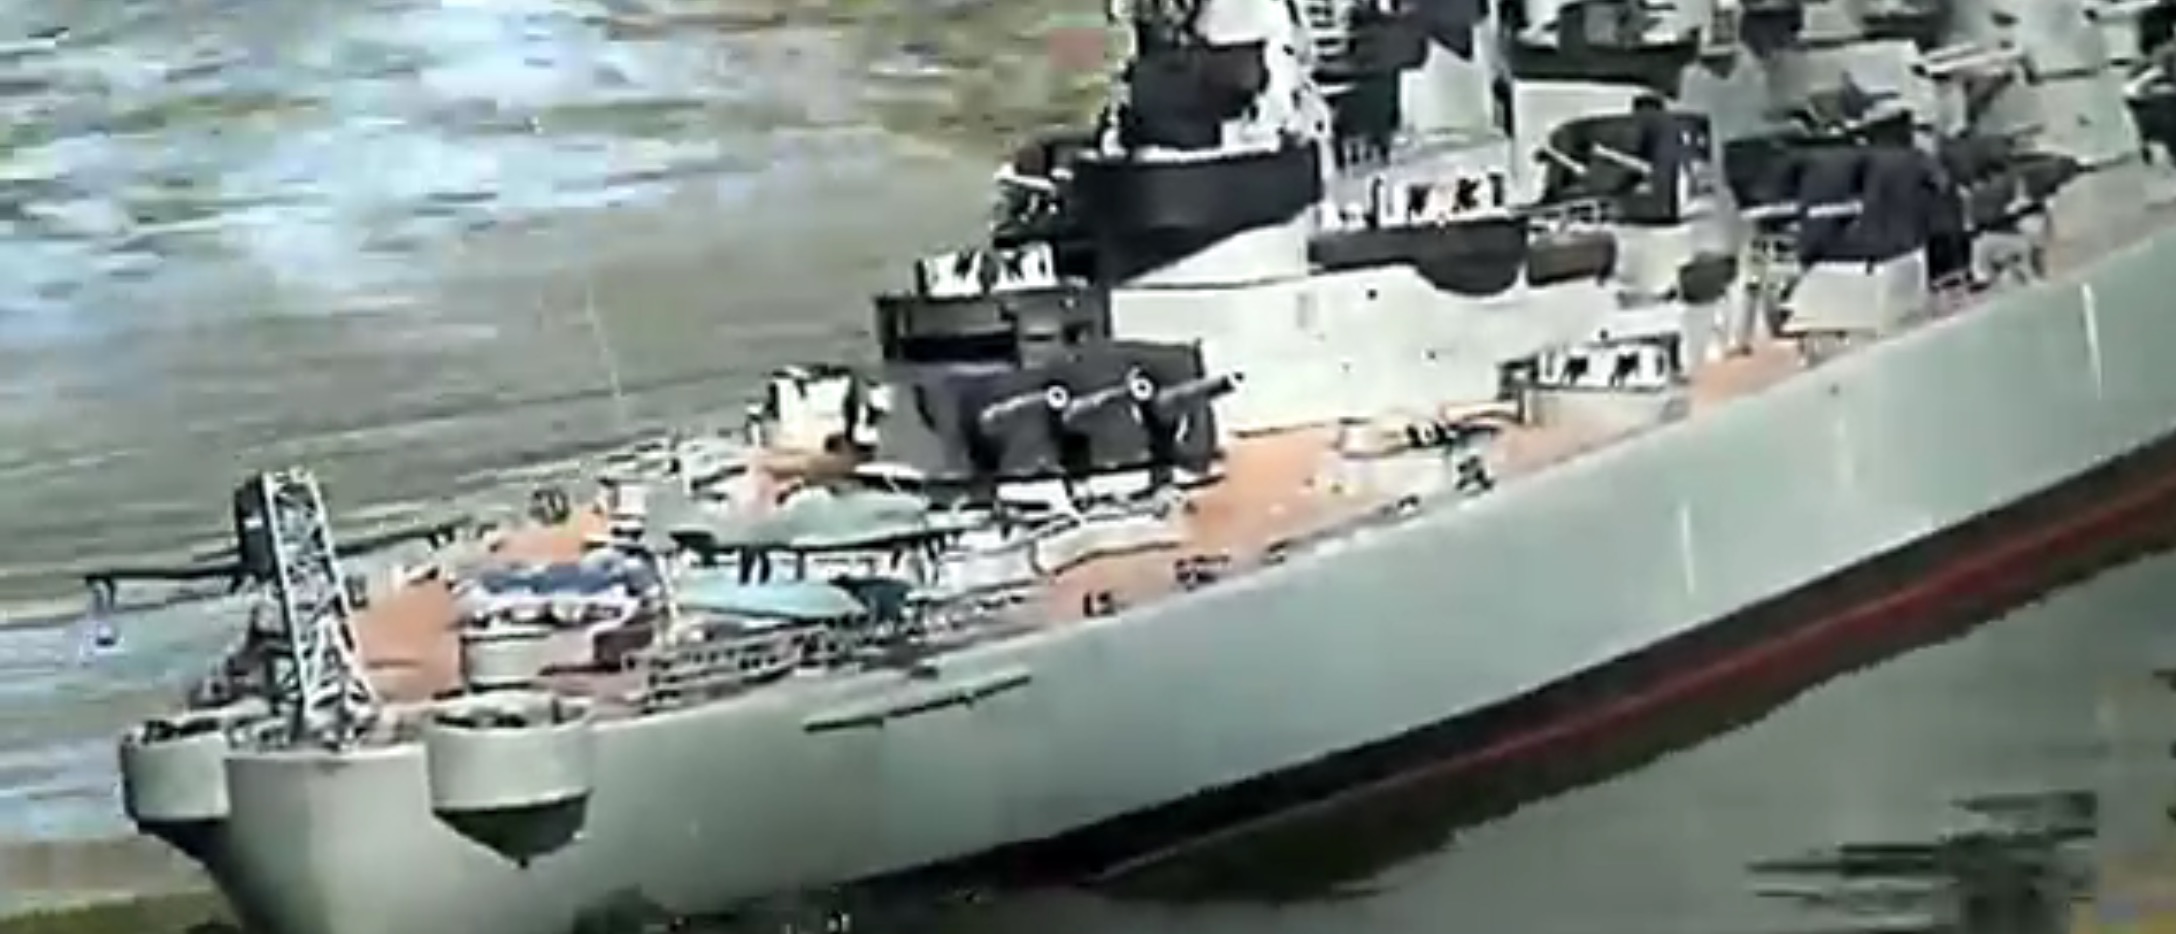 large scale rc battleships